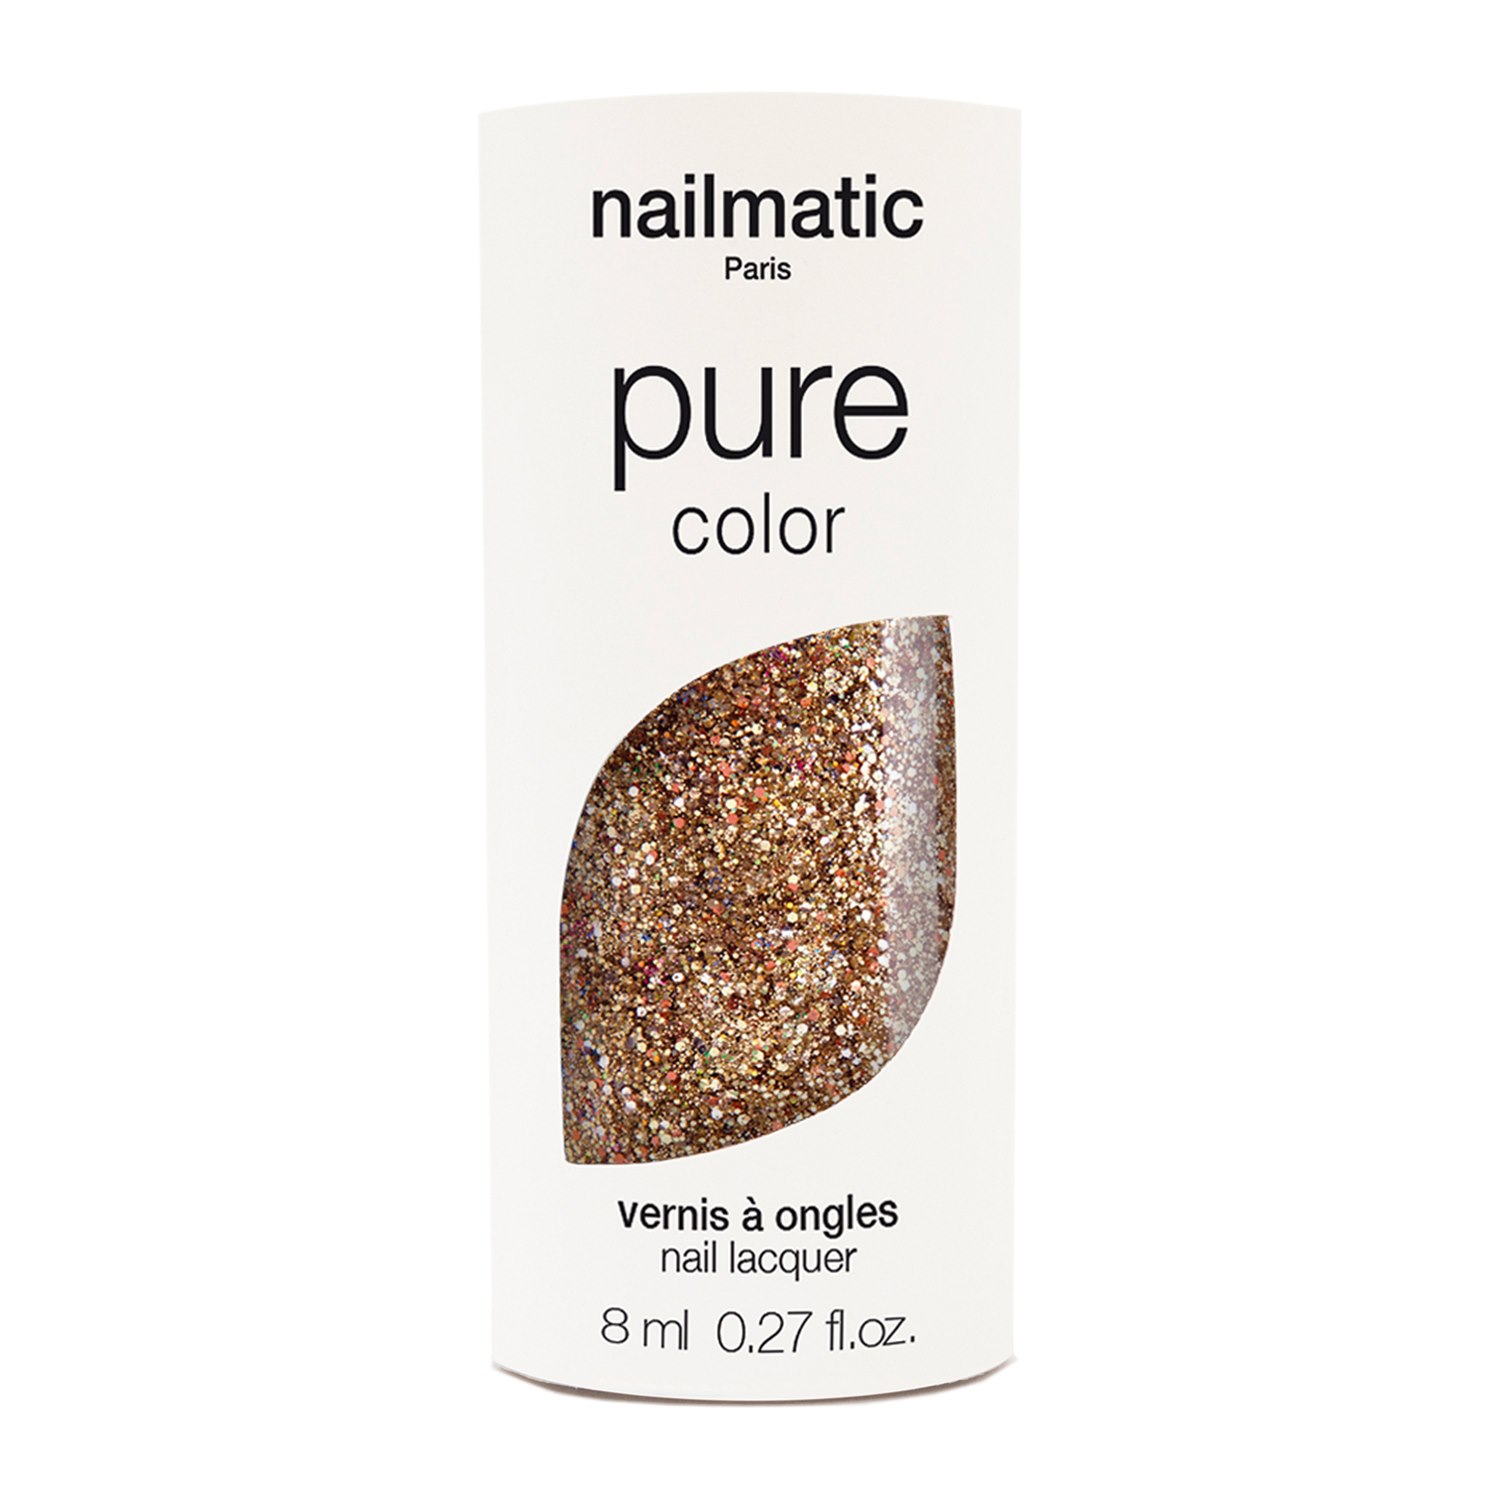 Nailmatic Pure Color Nail Polish 10-free, 8 ml Stella - Copper Glitter